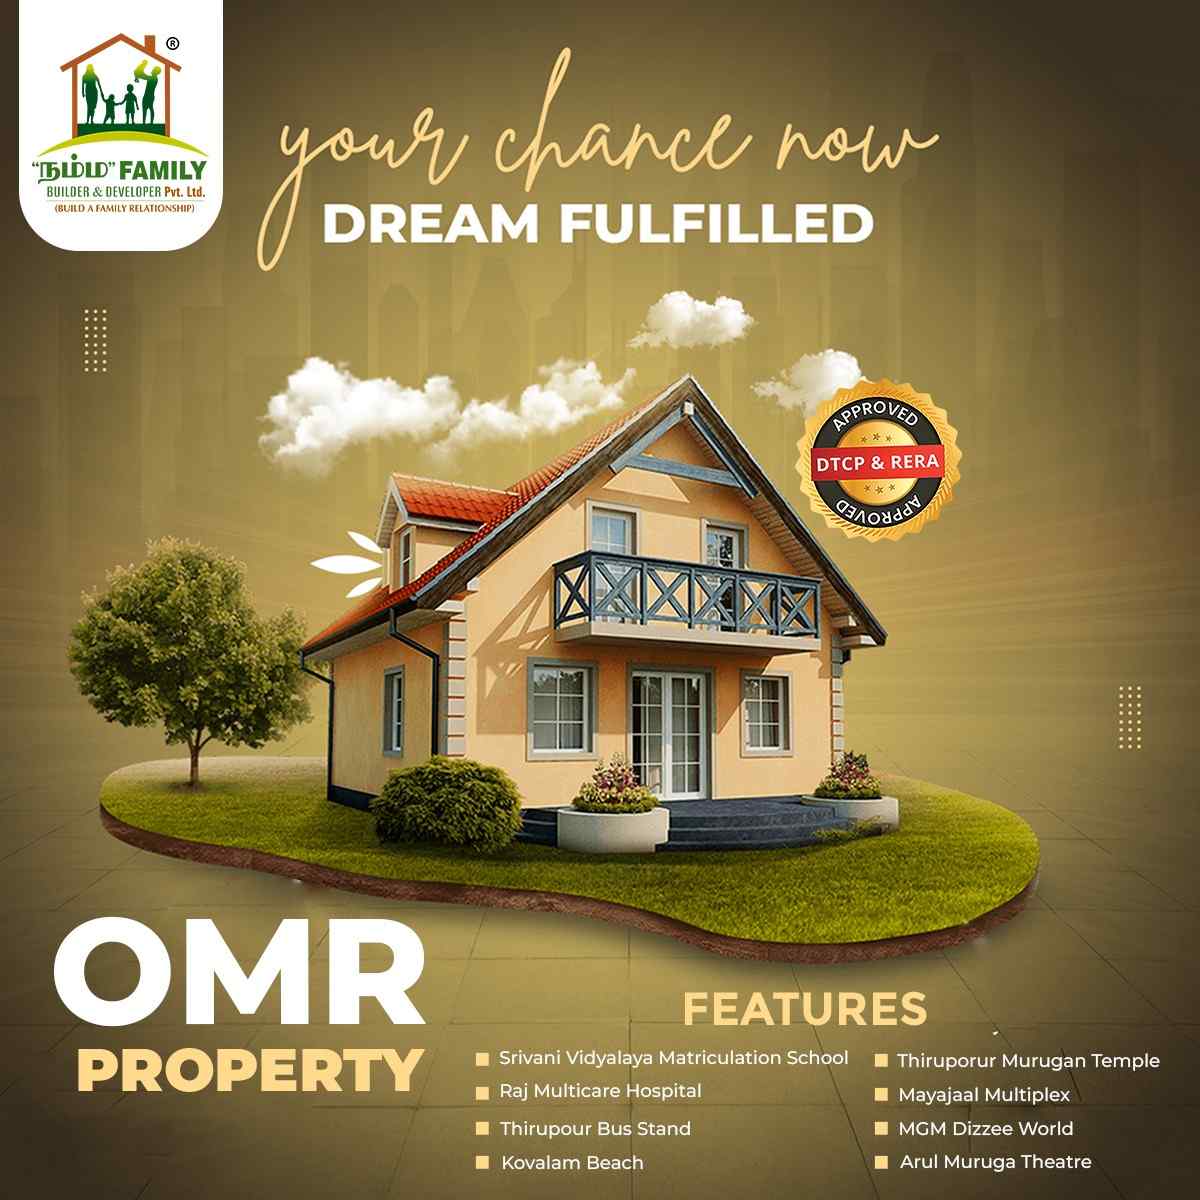 OMR Properties Cover Image - Namma Family Builder